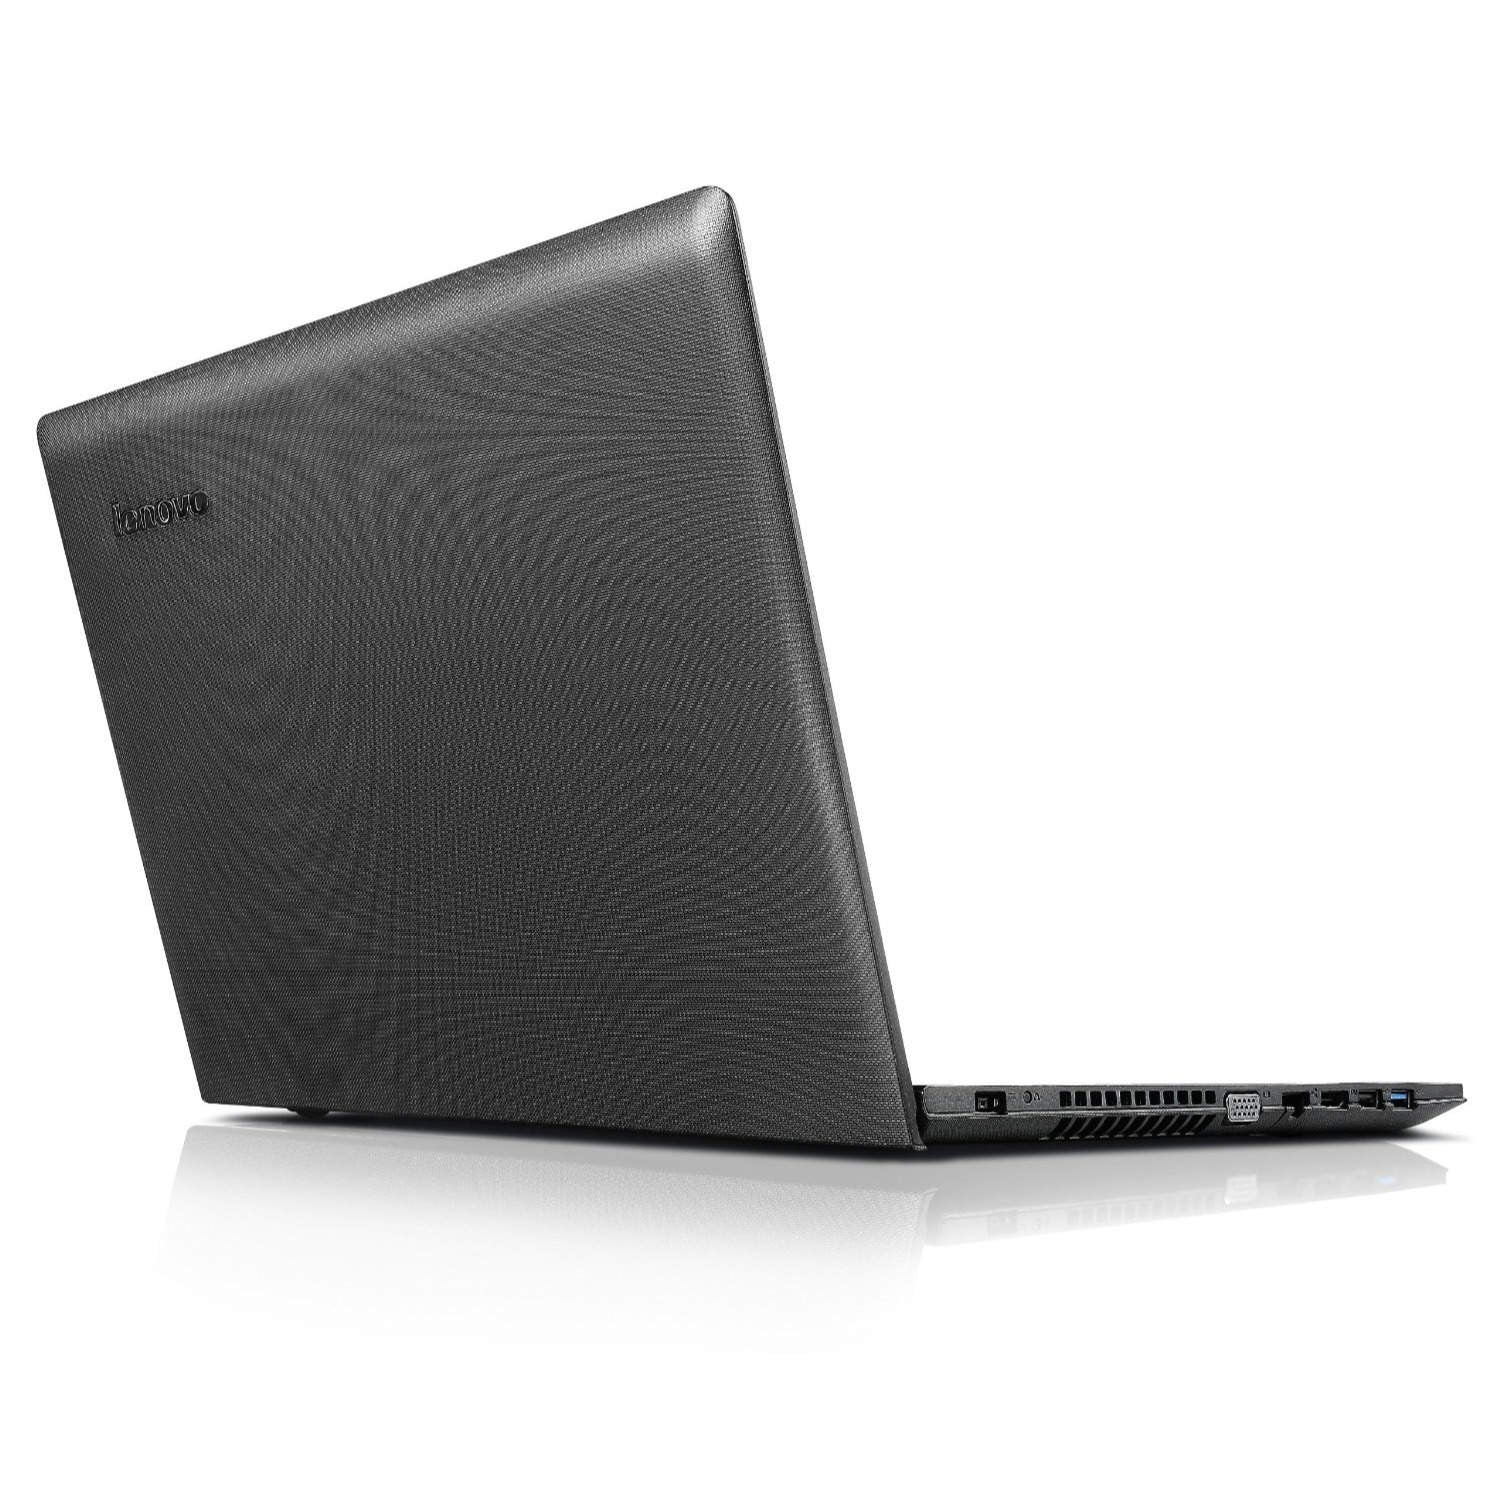 Lenovo G50-45 Notebook, AMD A8, 8GB RAM, 1TB HDD, 15.6" - Black